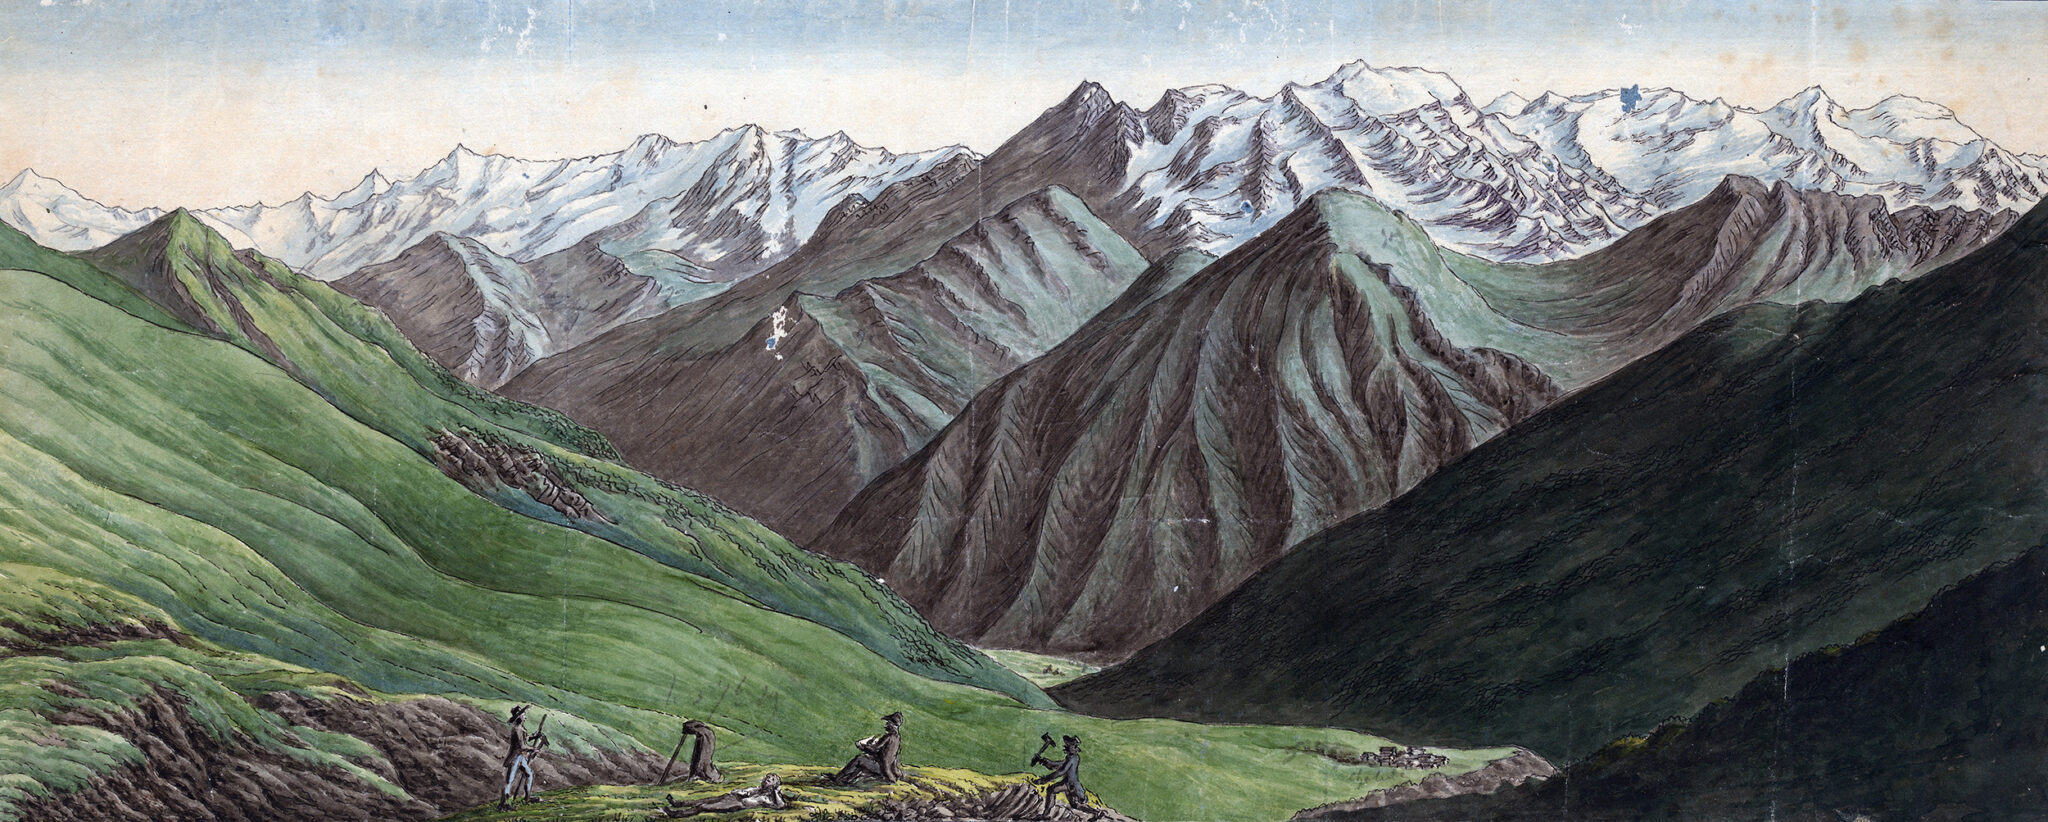 منظر فوق كامبو في وادي بلينيو، حوالي عام 1819.